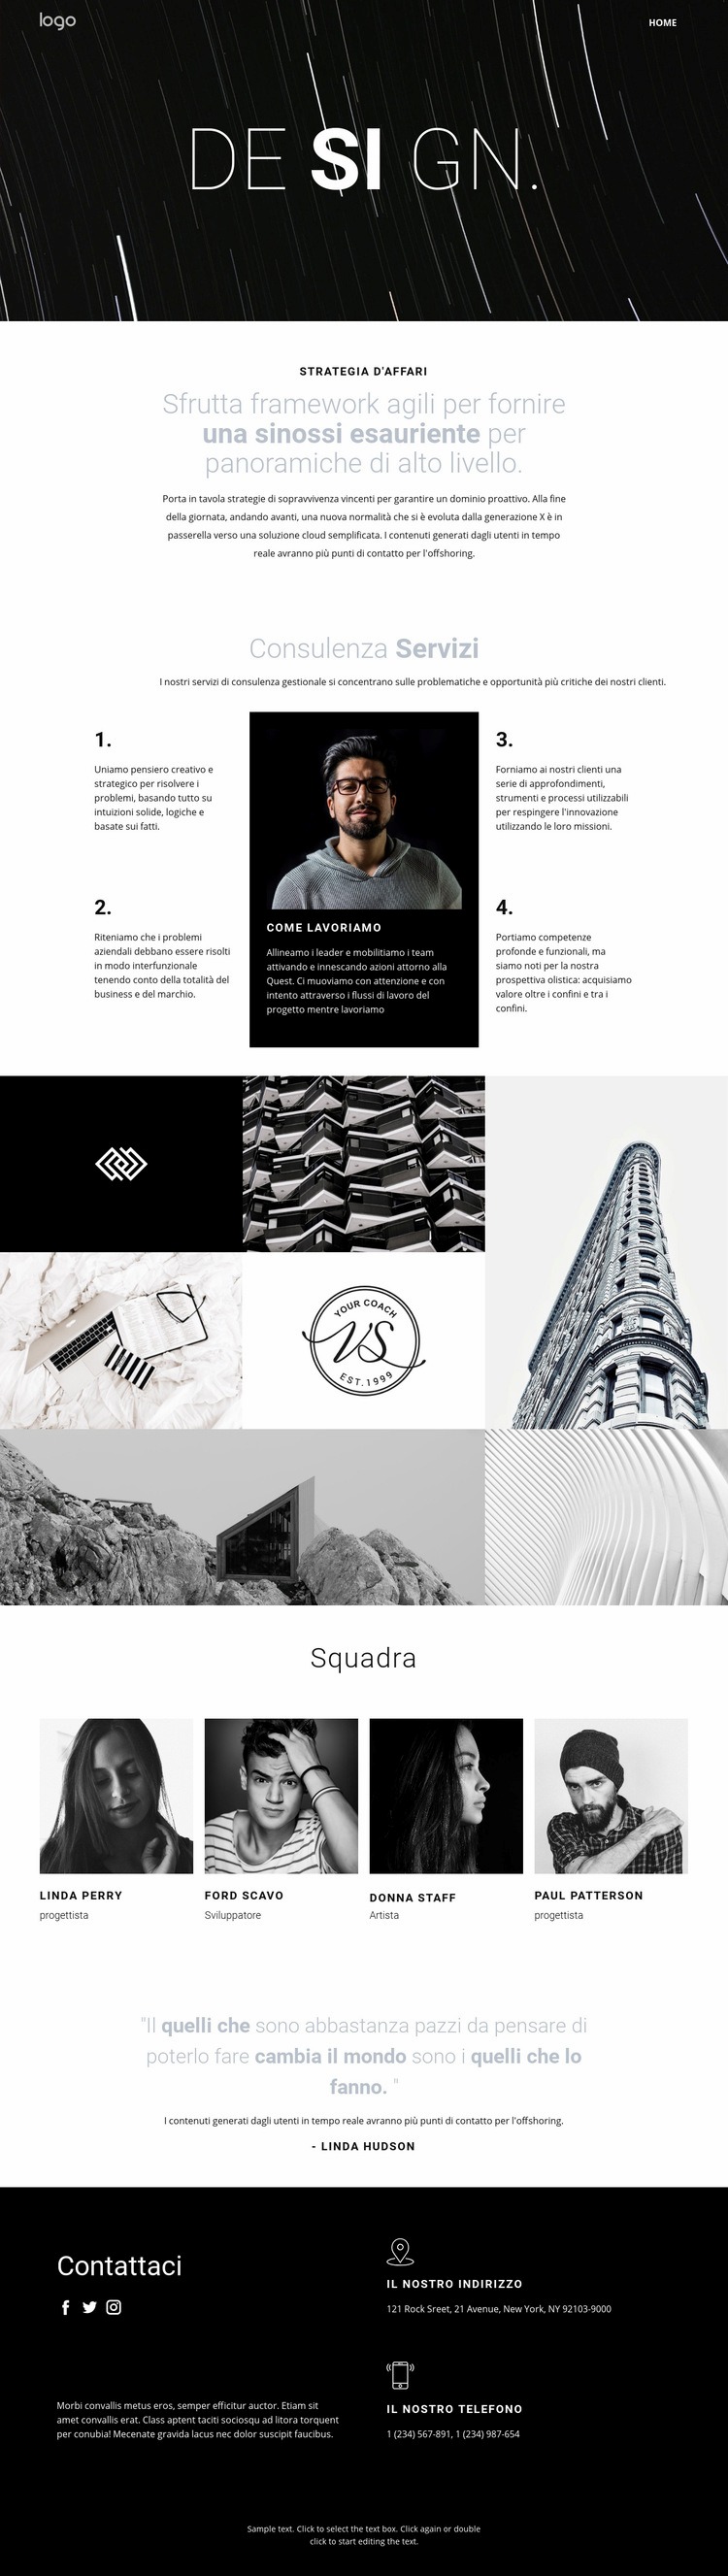 Design e arte creativa Progettazione di siti web